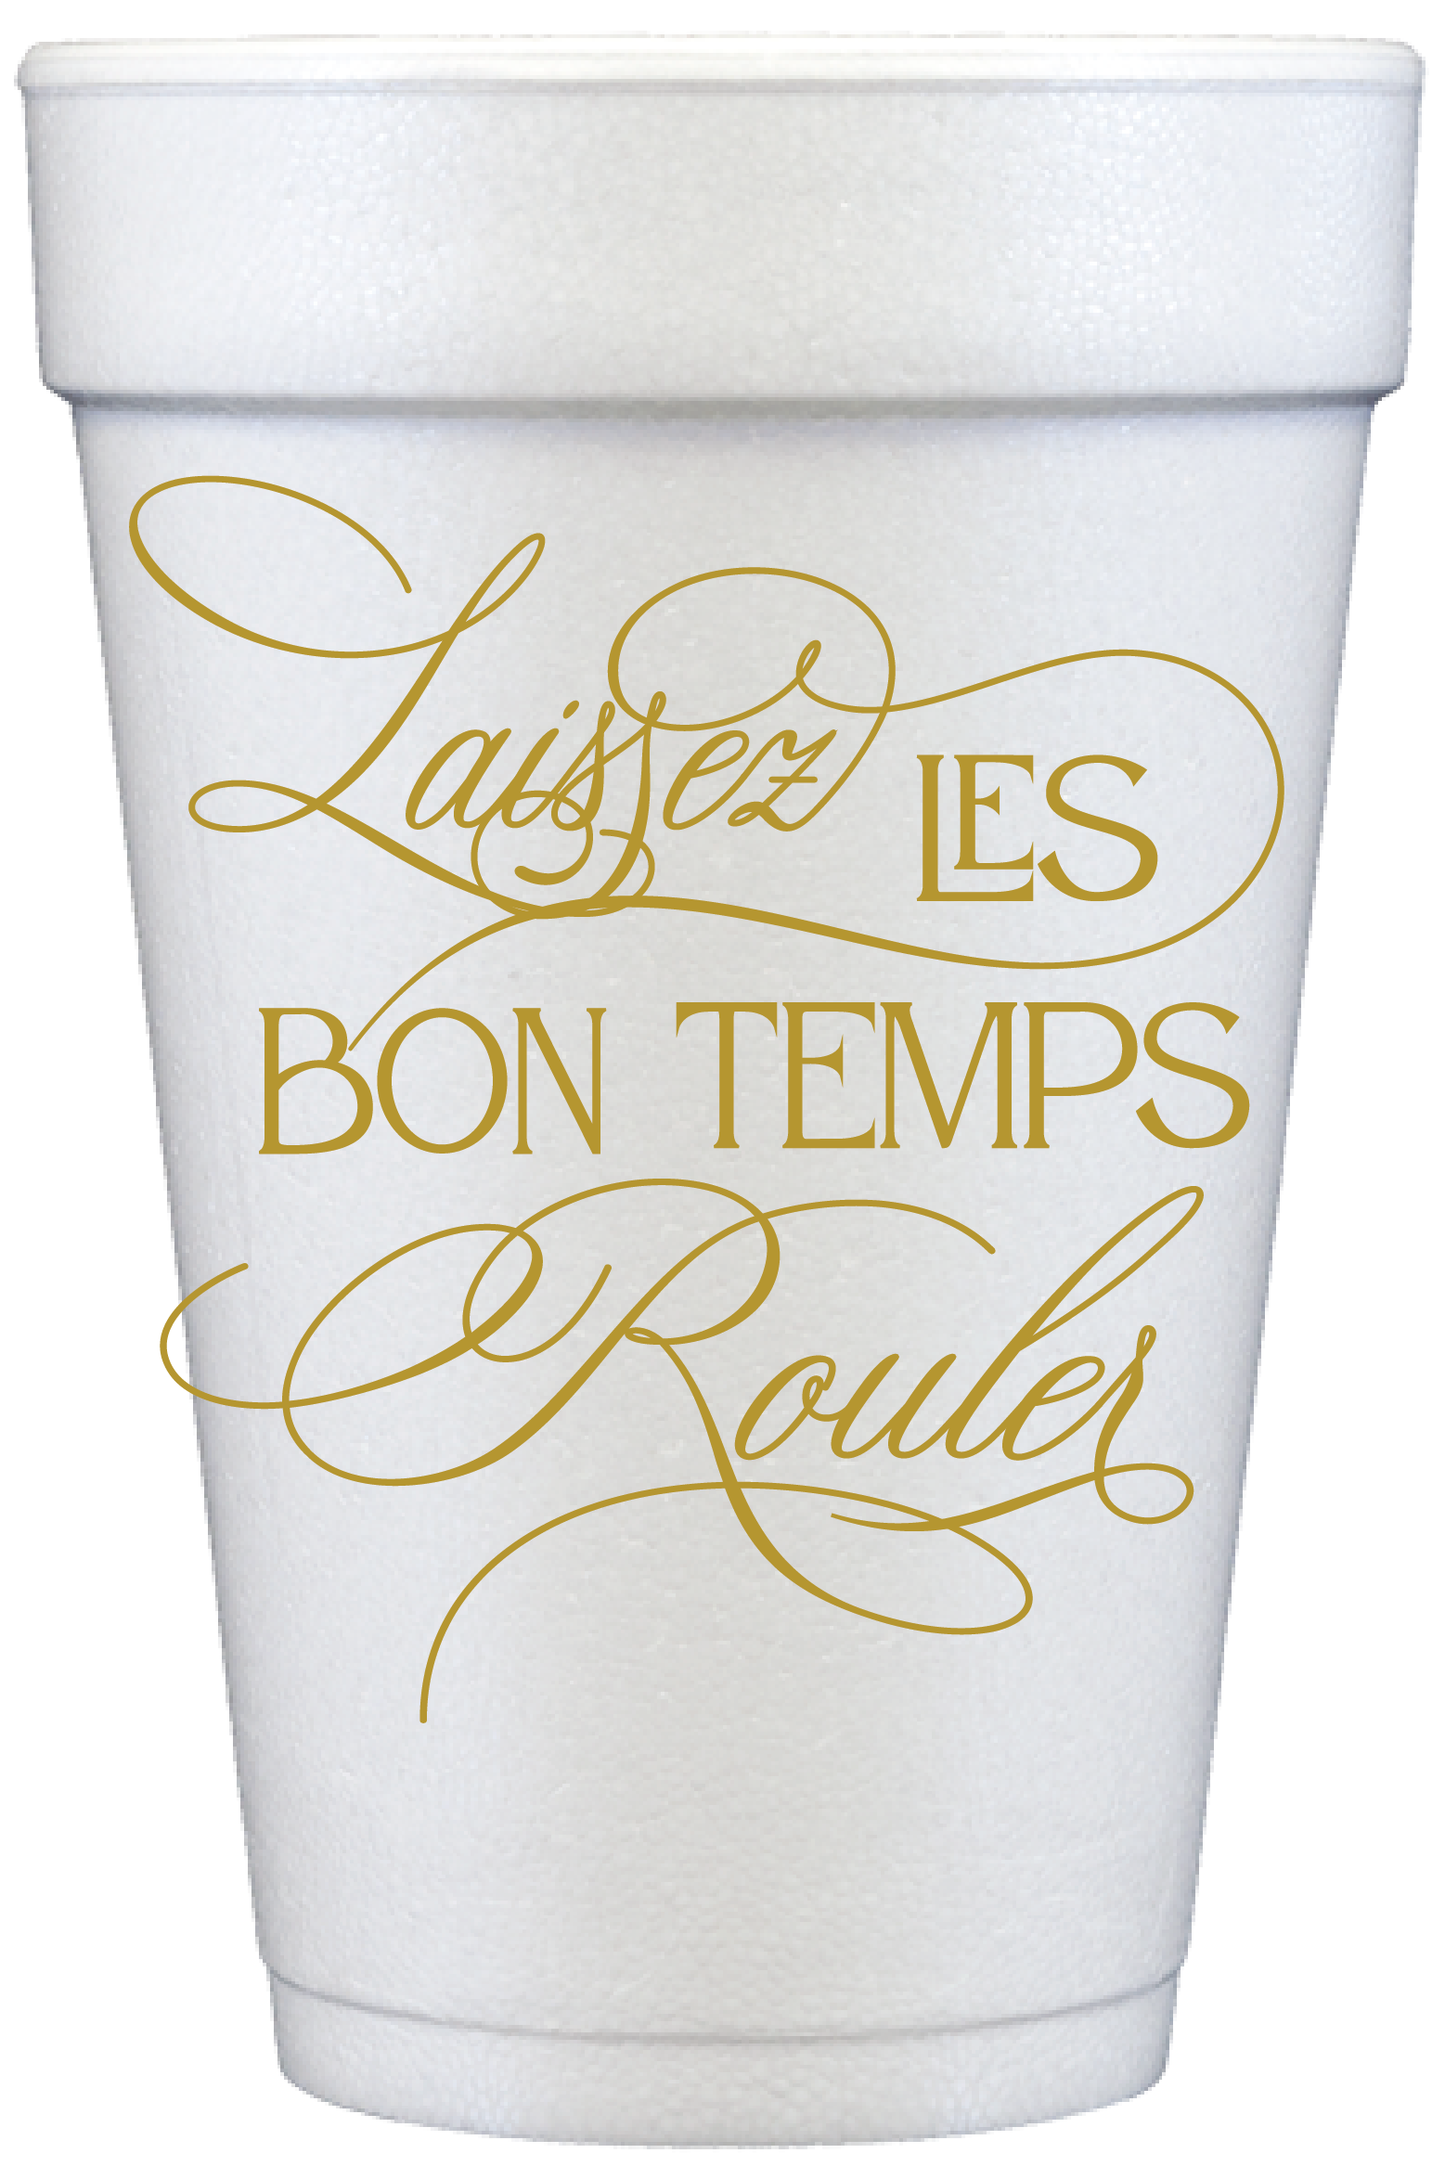 Laissez Les Bon Temps Rouler Mardi Gras Cups 20 oz Foam